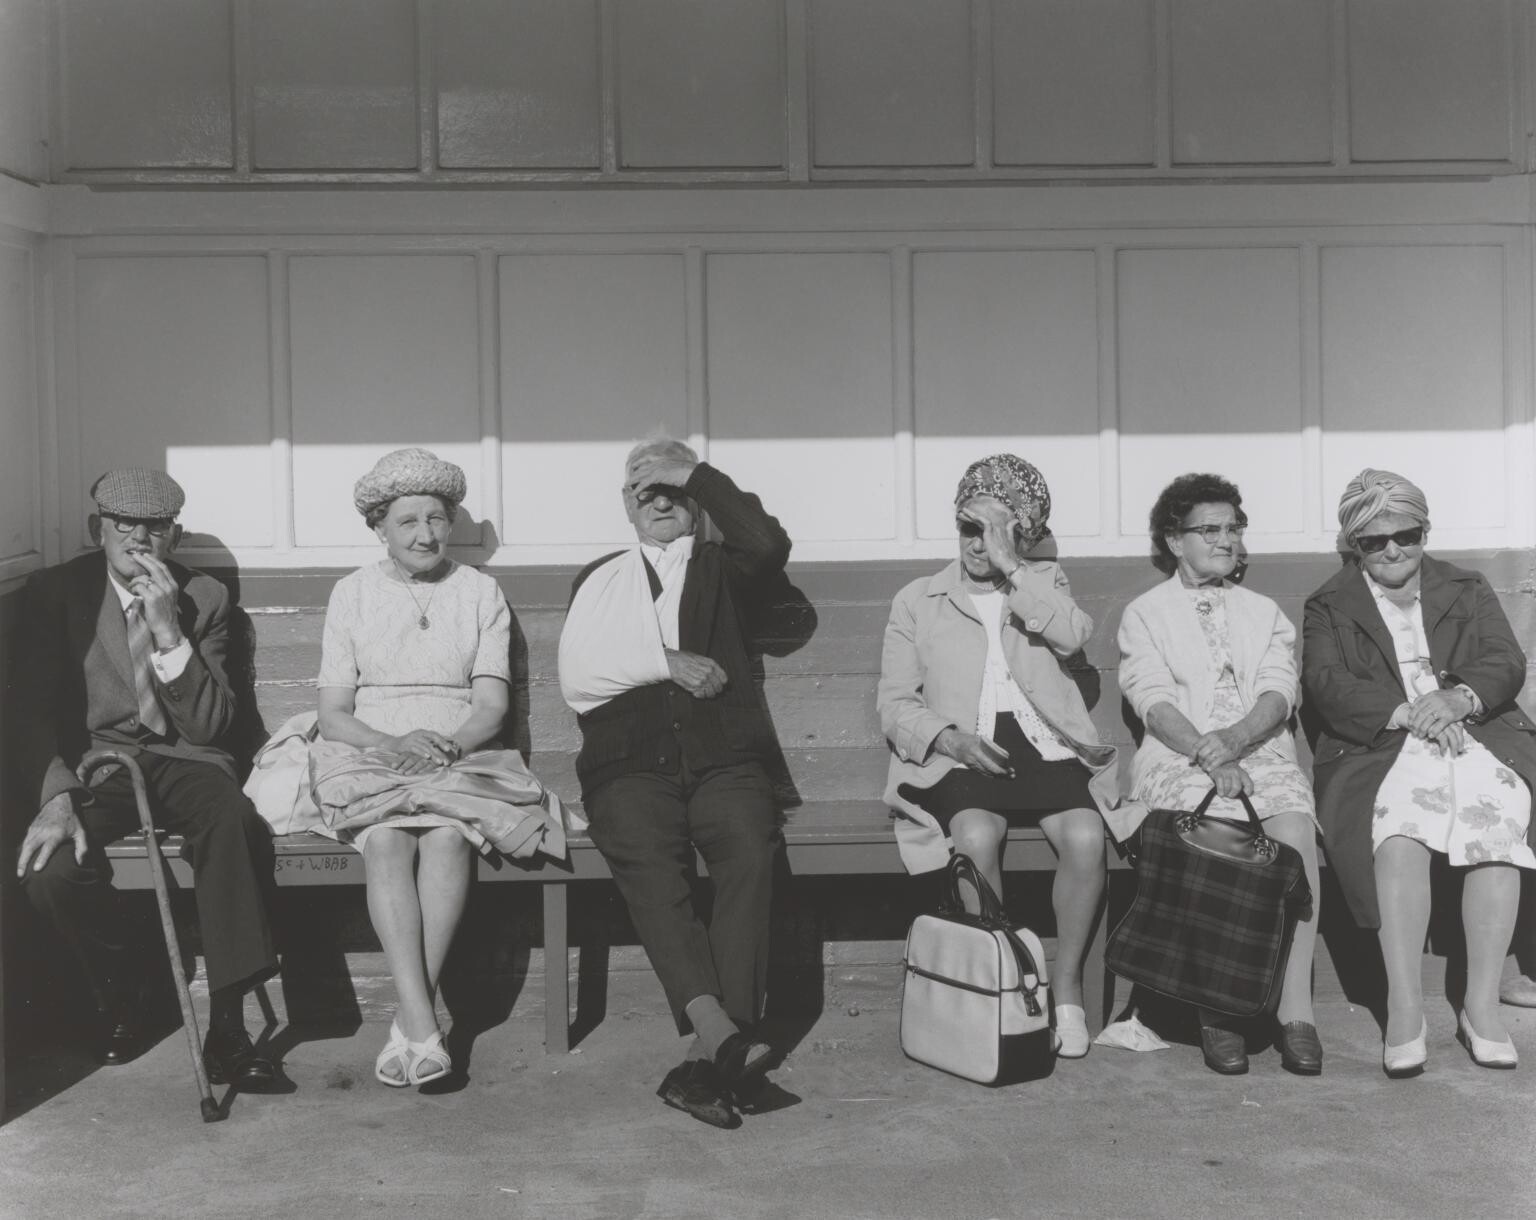 Пенсионеры в приюте, Уитли-Бей, Тайнсайд, 1976 год. Фотограф Крис Киллип